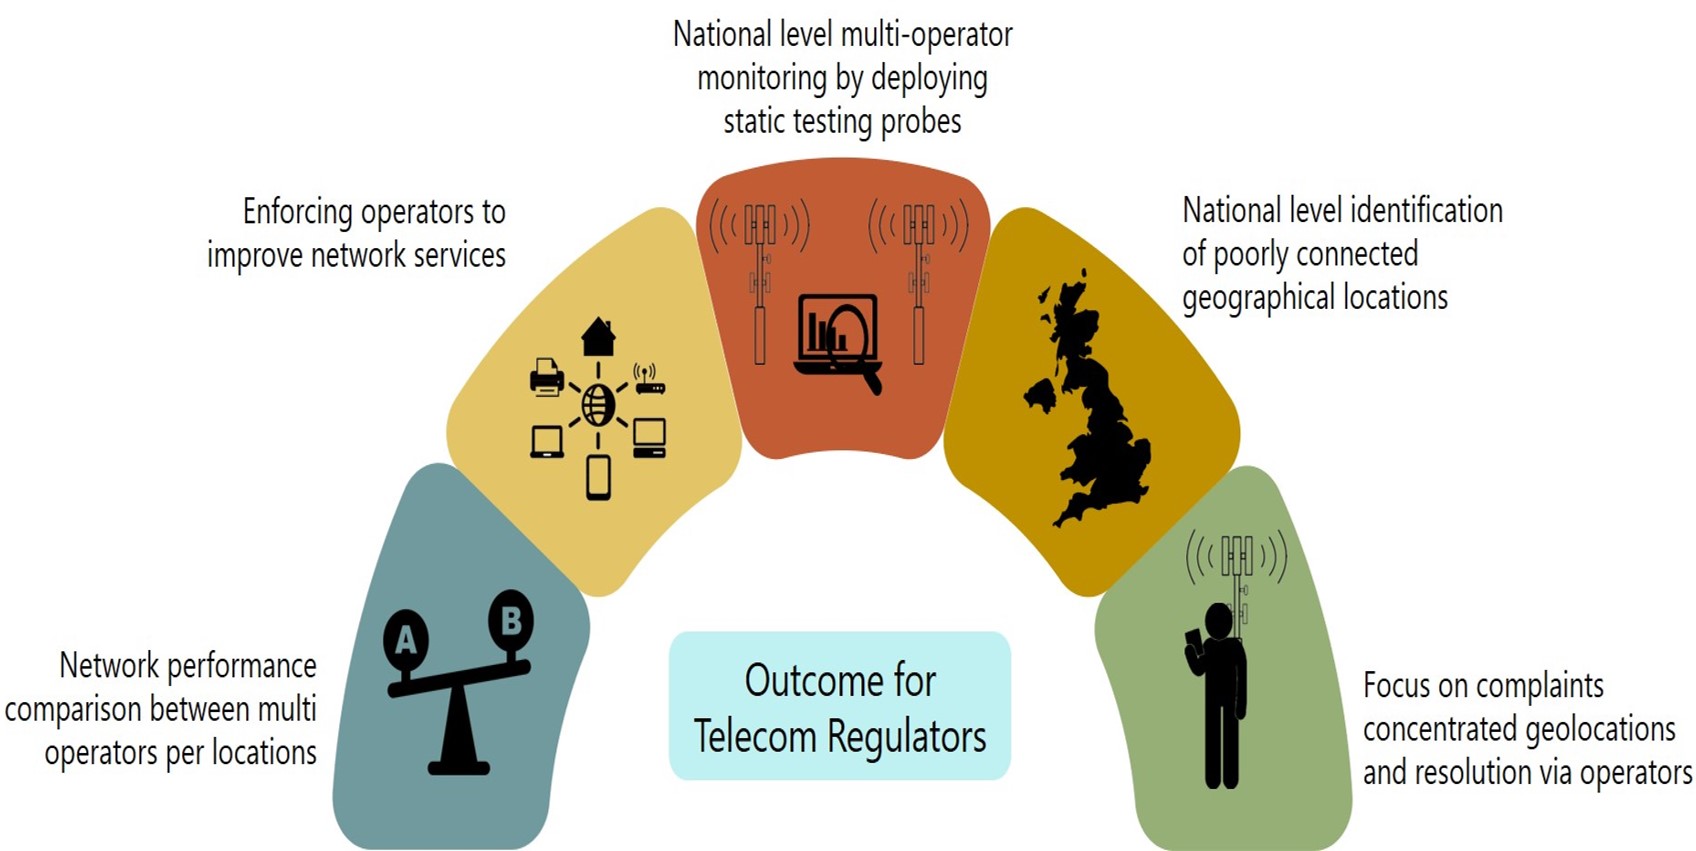 outcome_for_telecom_regulators